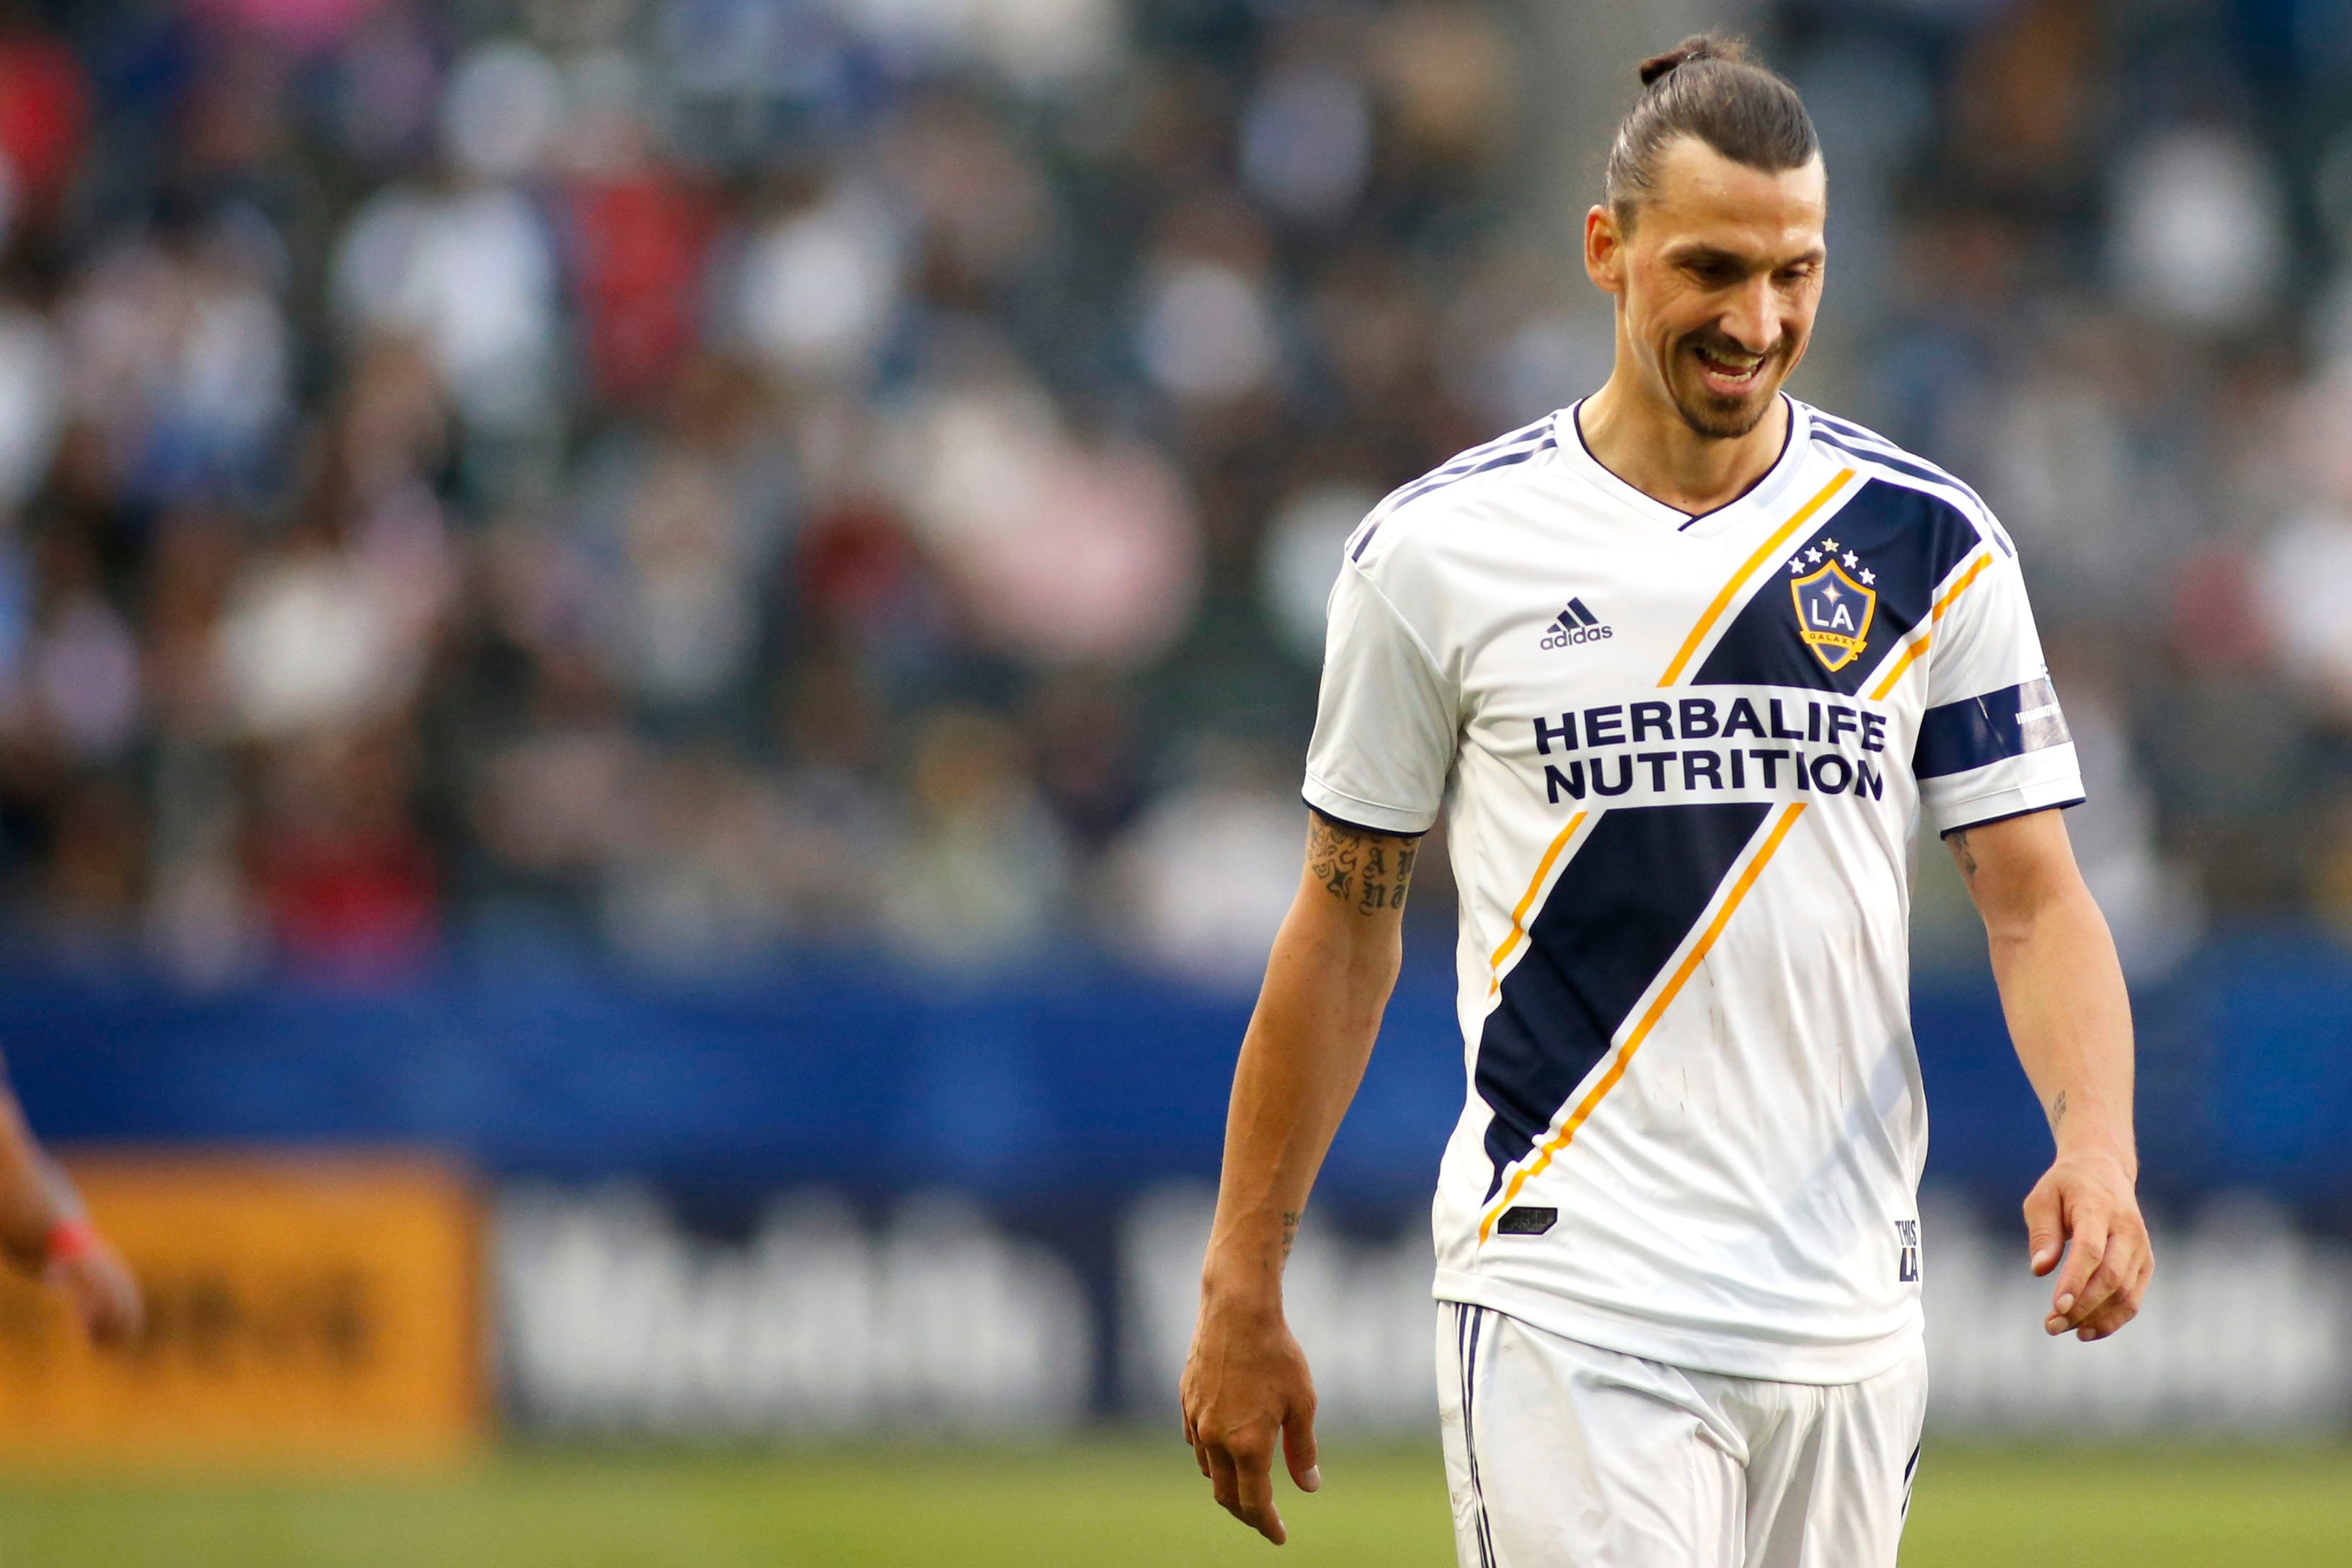 Antes de retornar ao Milan, Zlatan Ibrahimovic atuou pelo Los Angeles Galaxy, dos Estados Unidos.